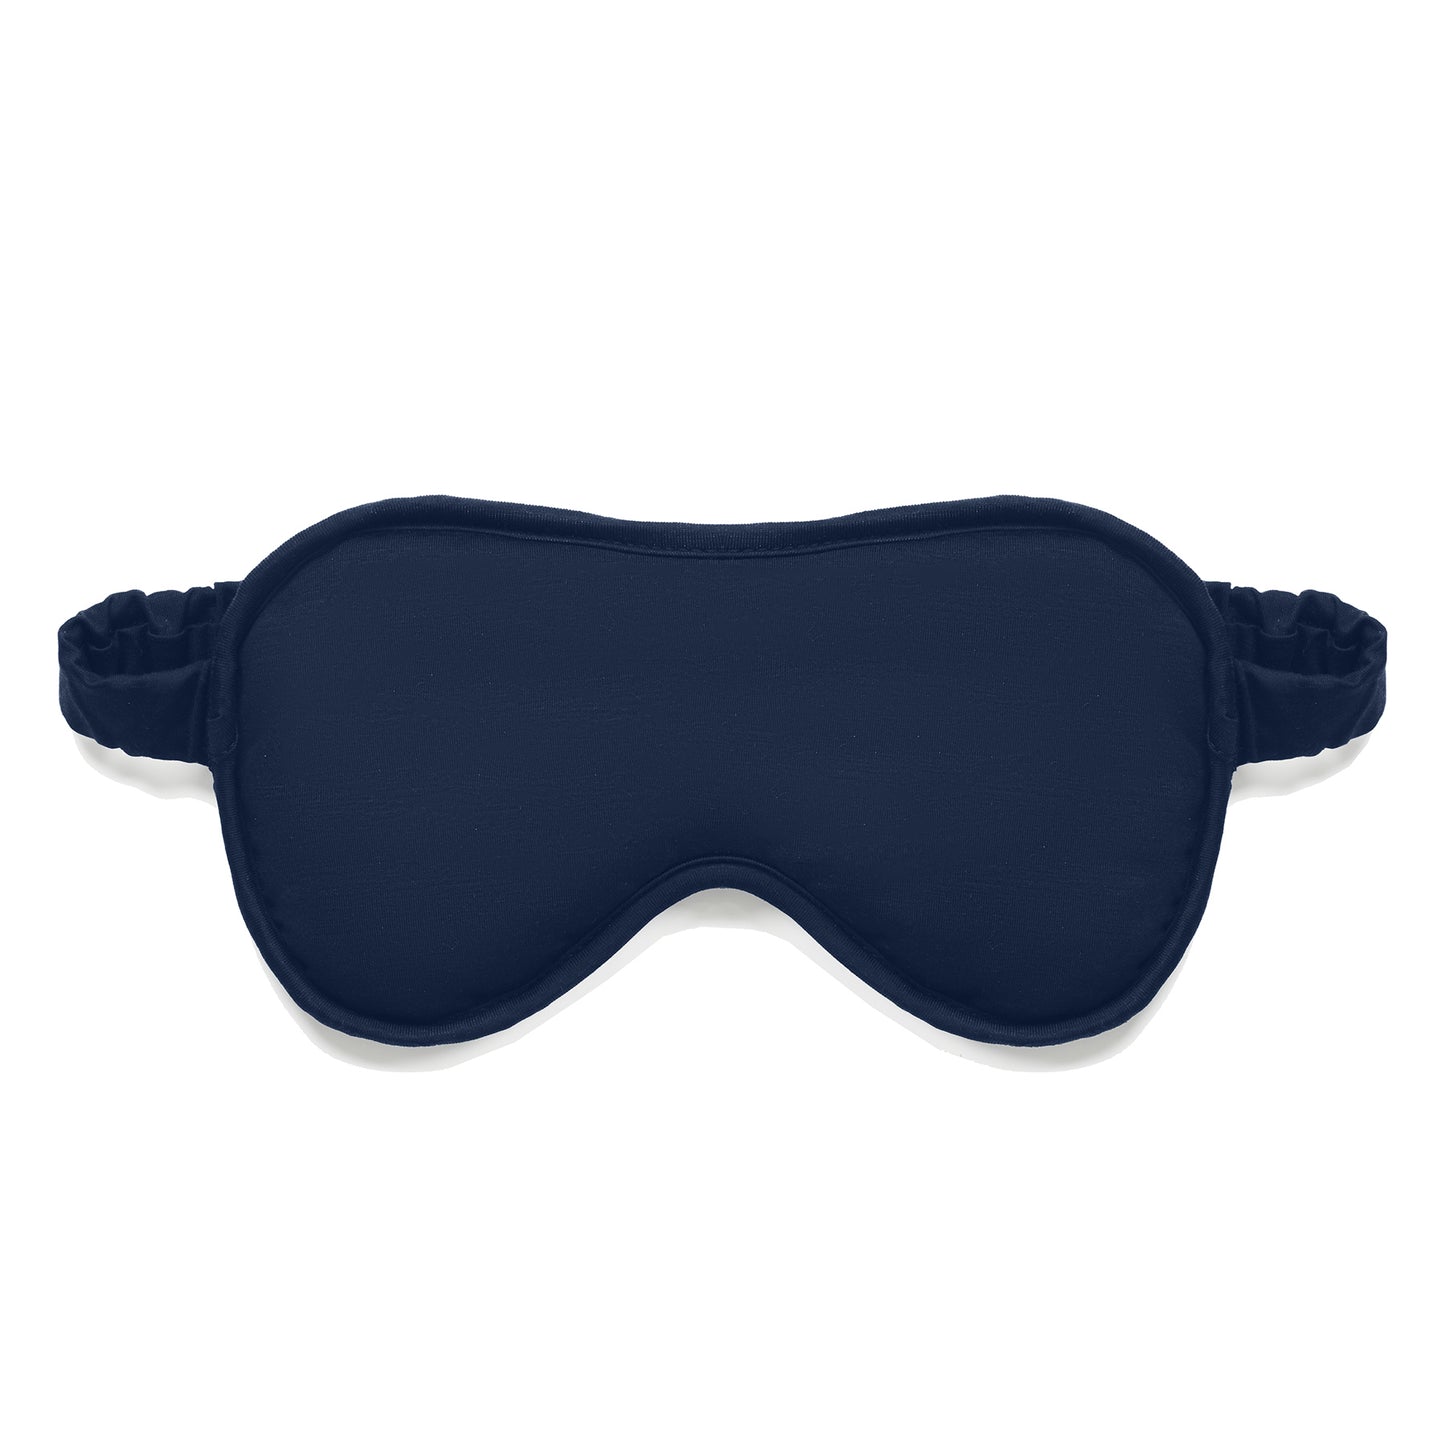 Kühlende Schlafmaske || Navy blue